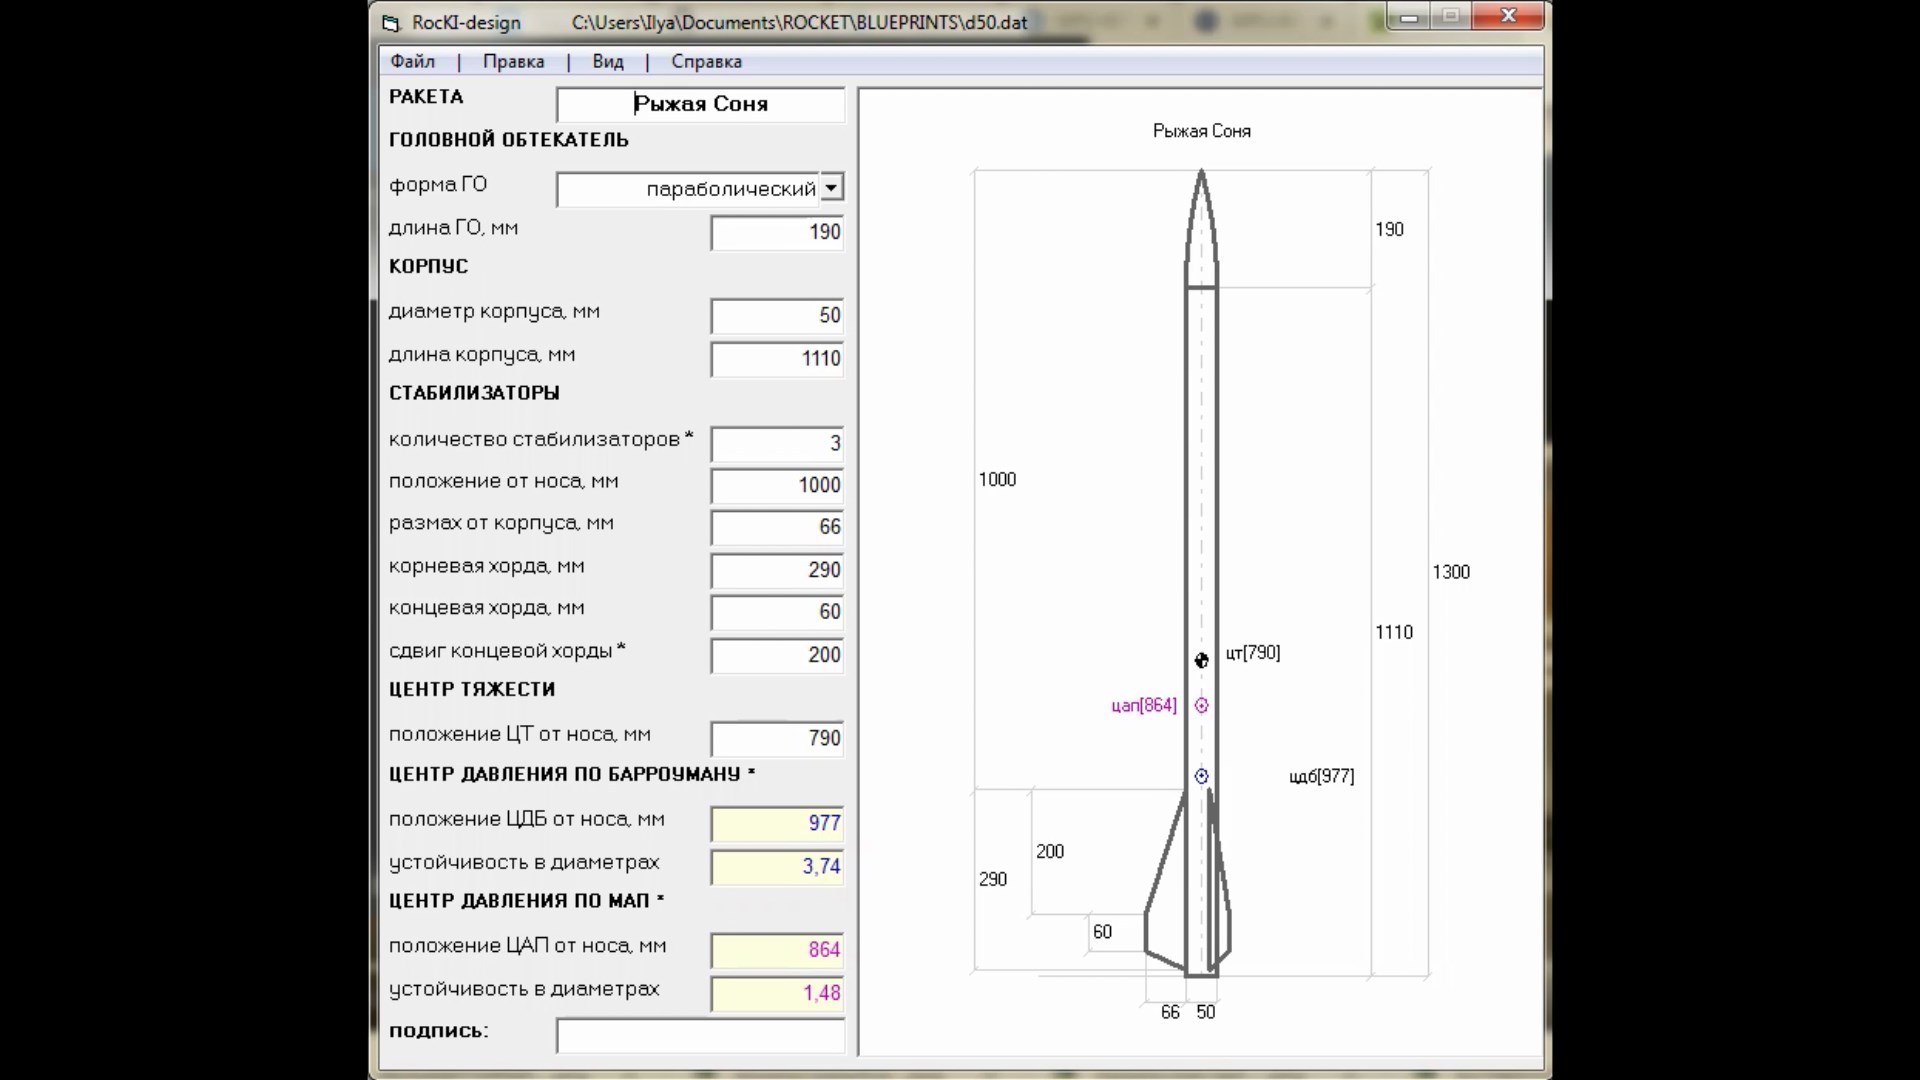 Интерфейс Rocki-design и модель будущей ракеты